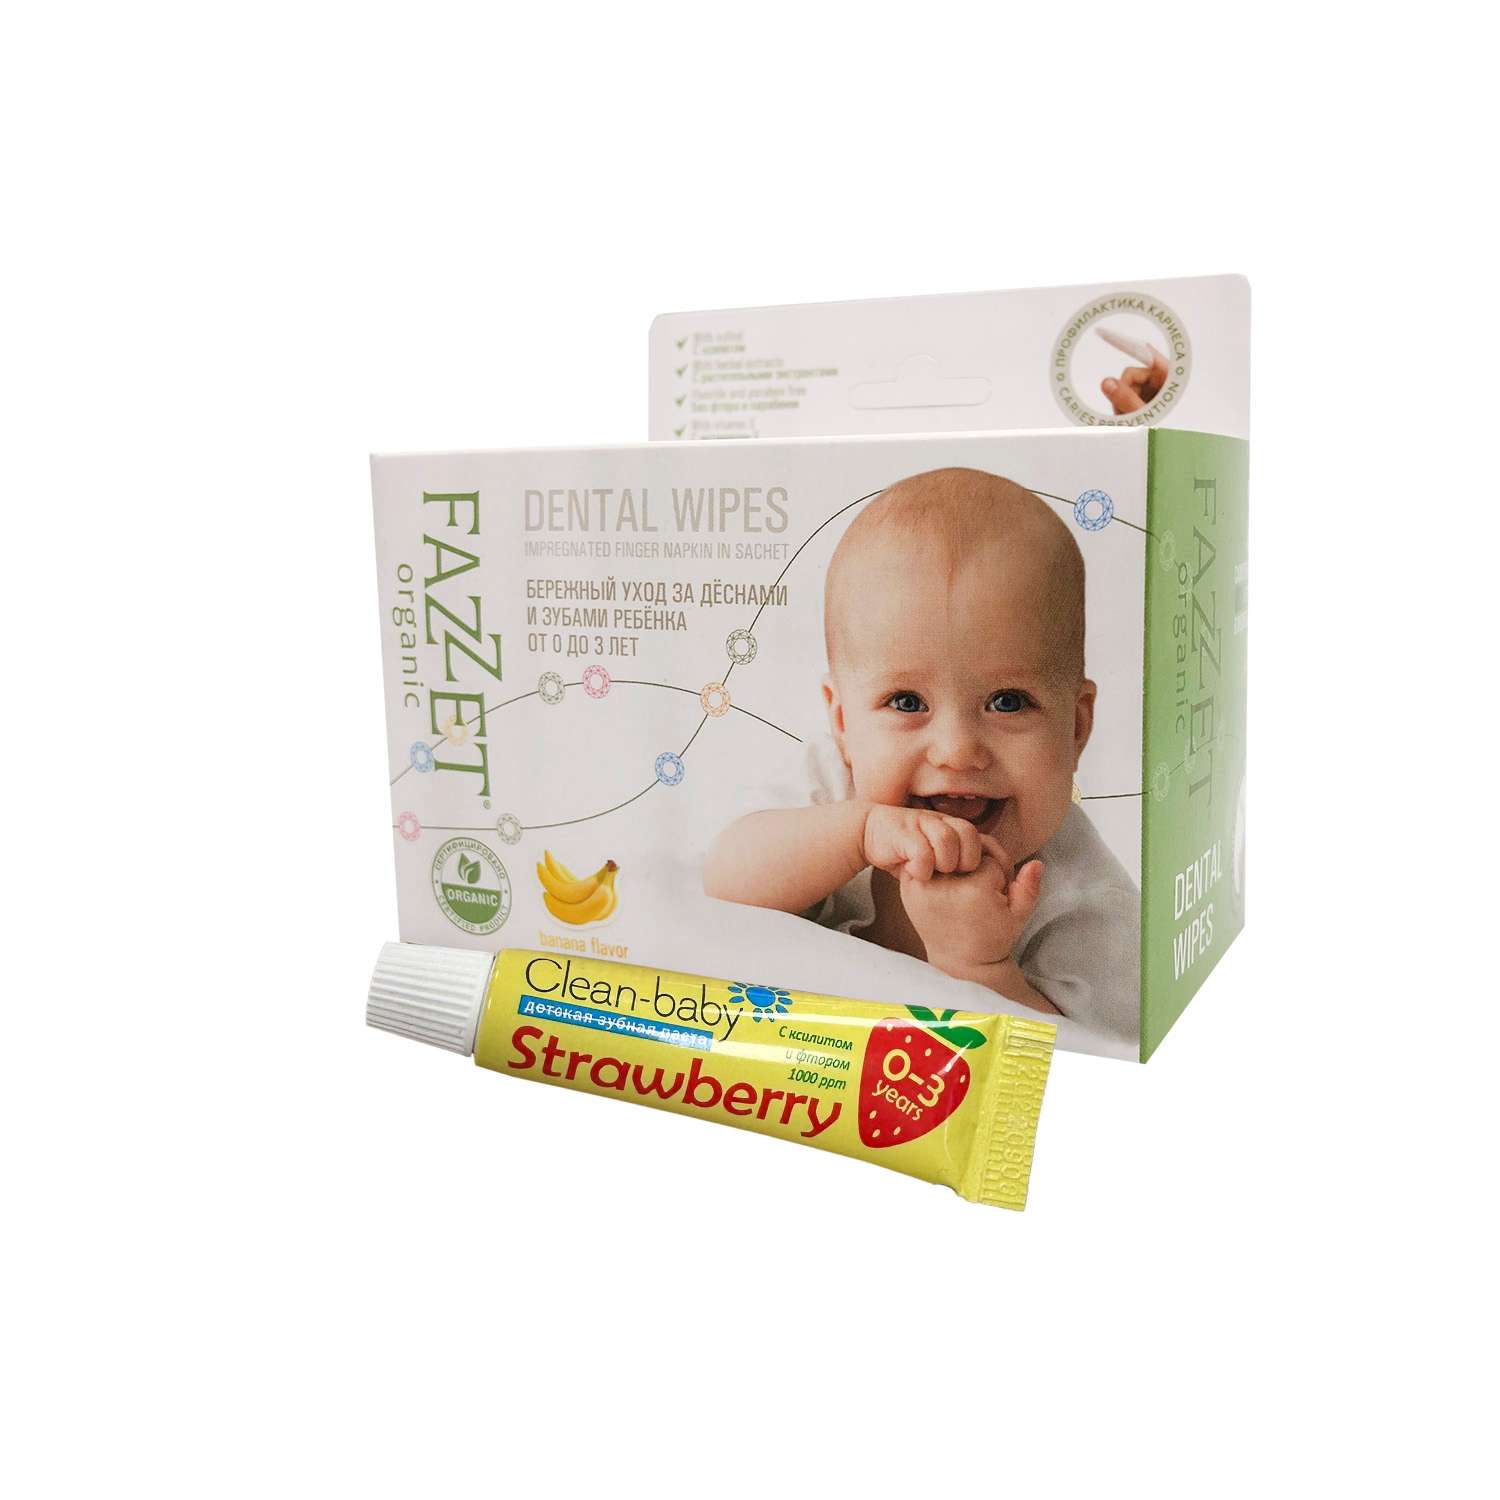 Детские салфетки Fazzet ORGANIC для полости рта 0-3 года 28 шт и подарок зубная паста Clean-baby 0-3 года 5 мл - фото 1